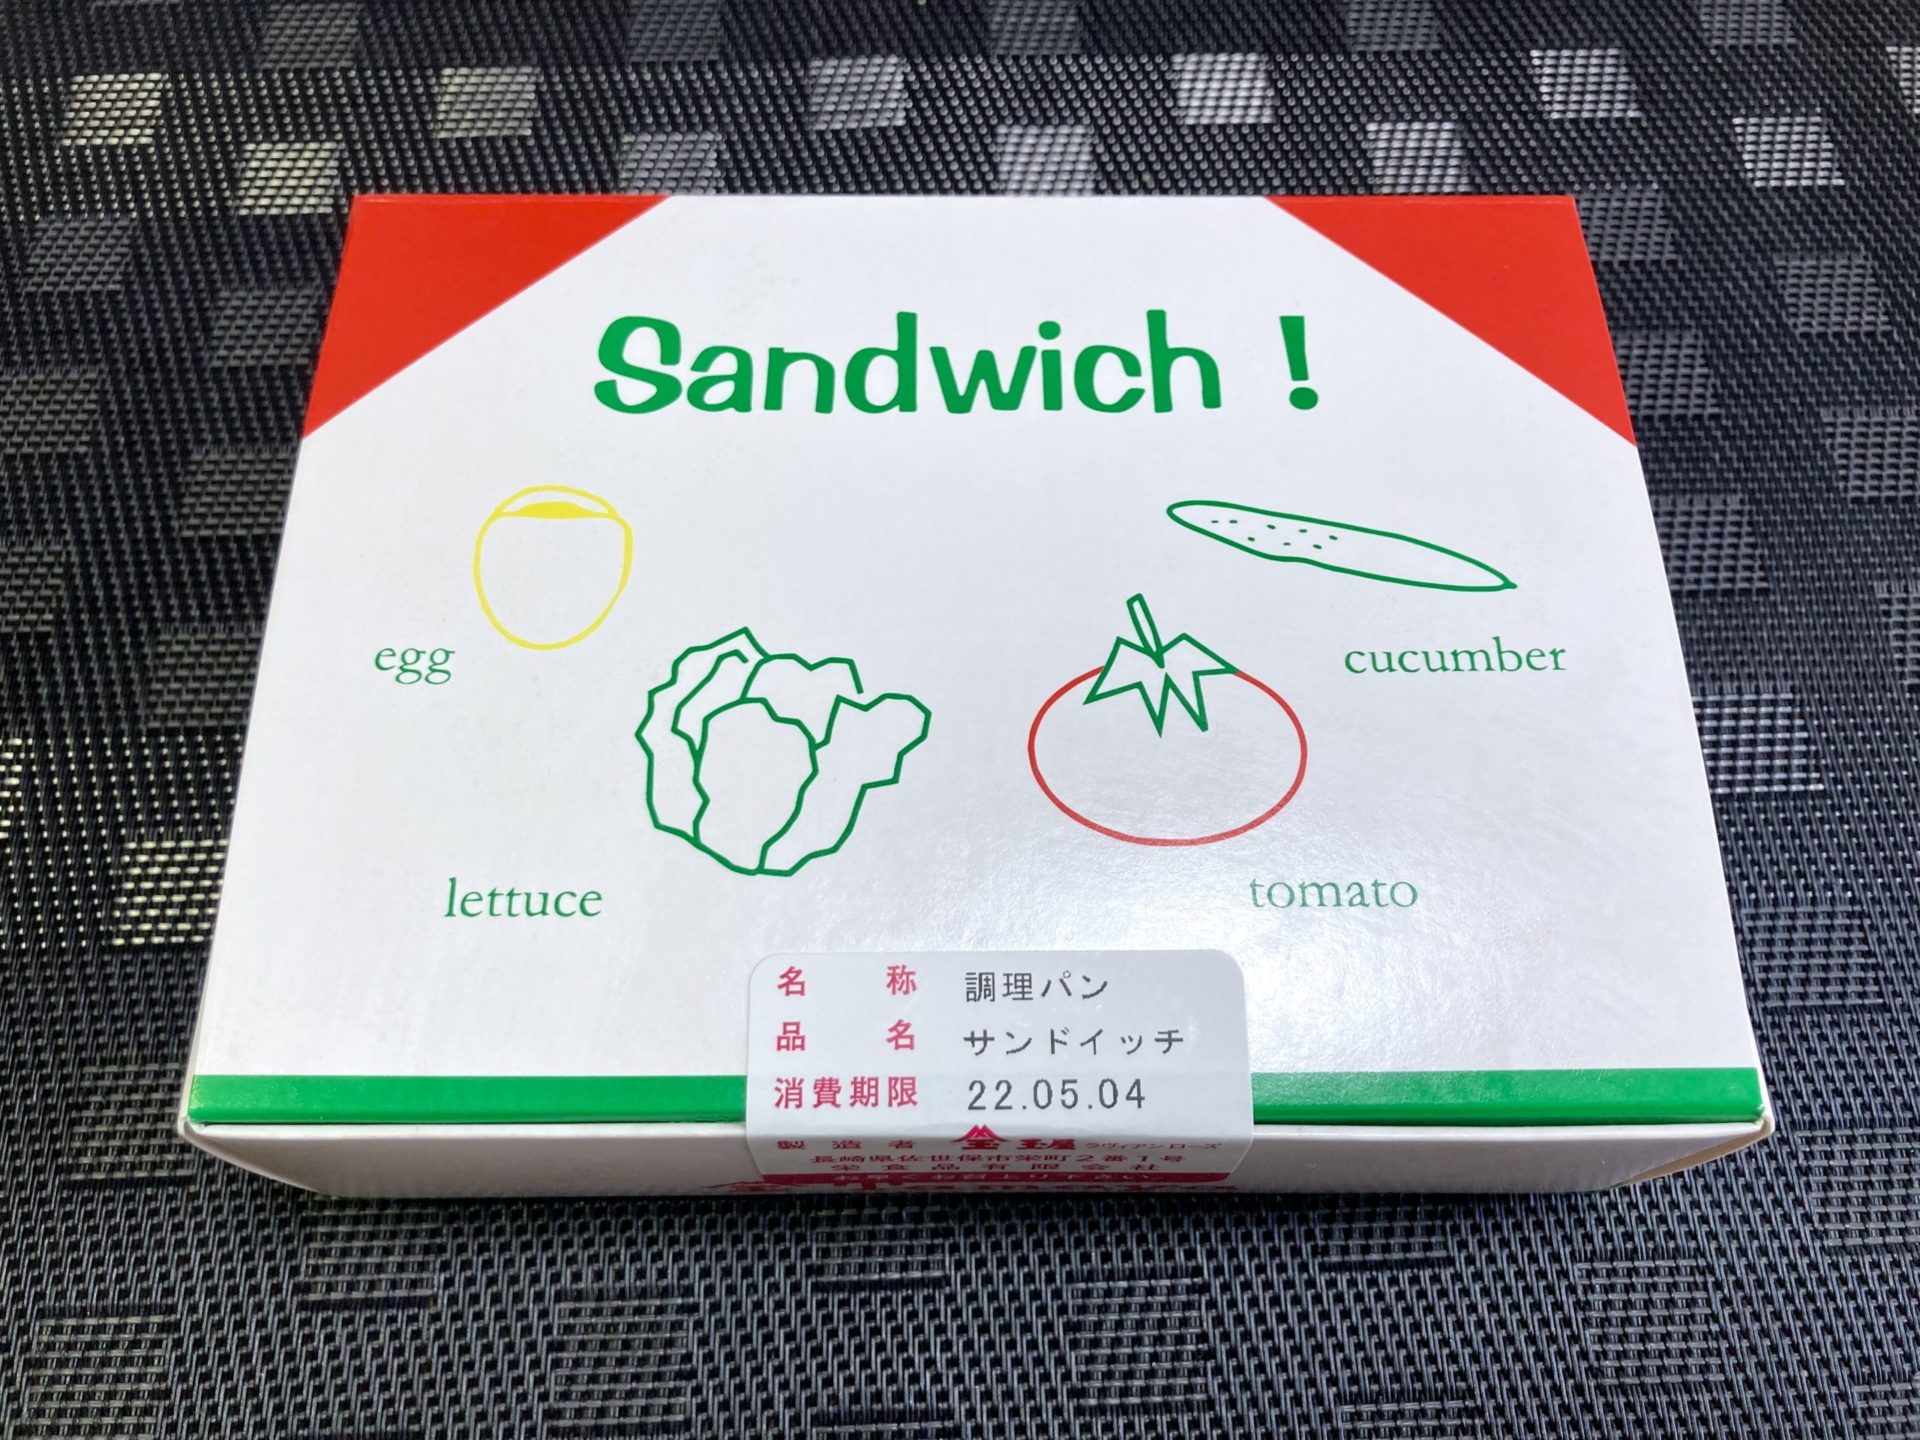 星野源さんもANNで語ったサンドイッチ